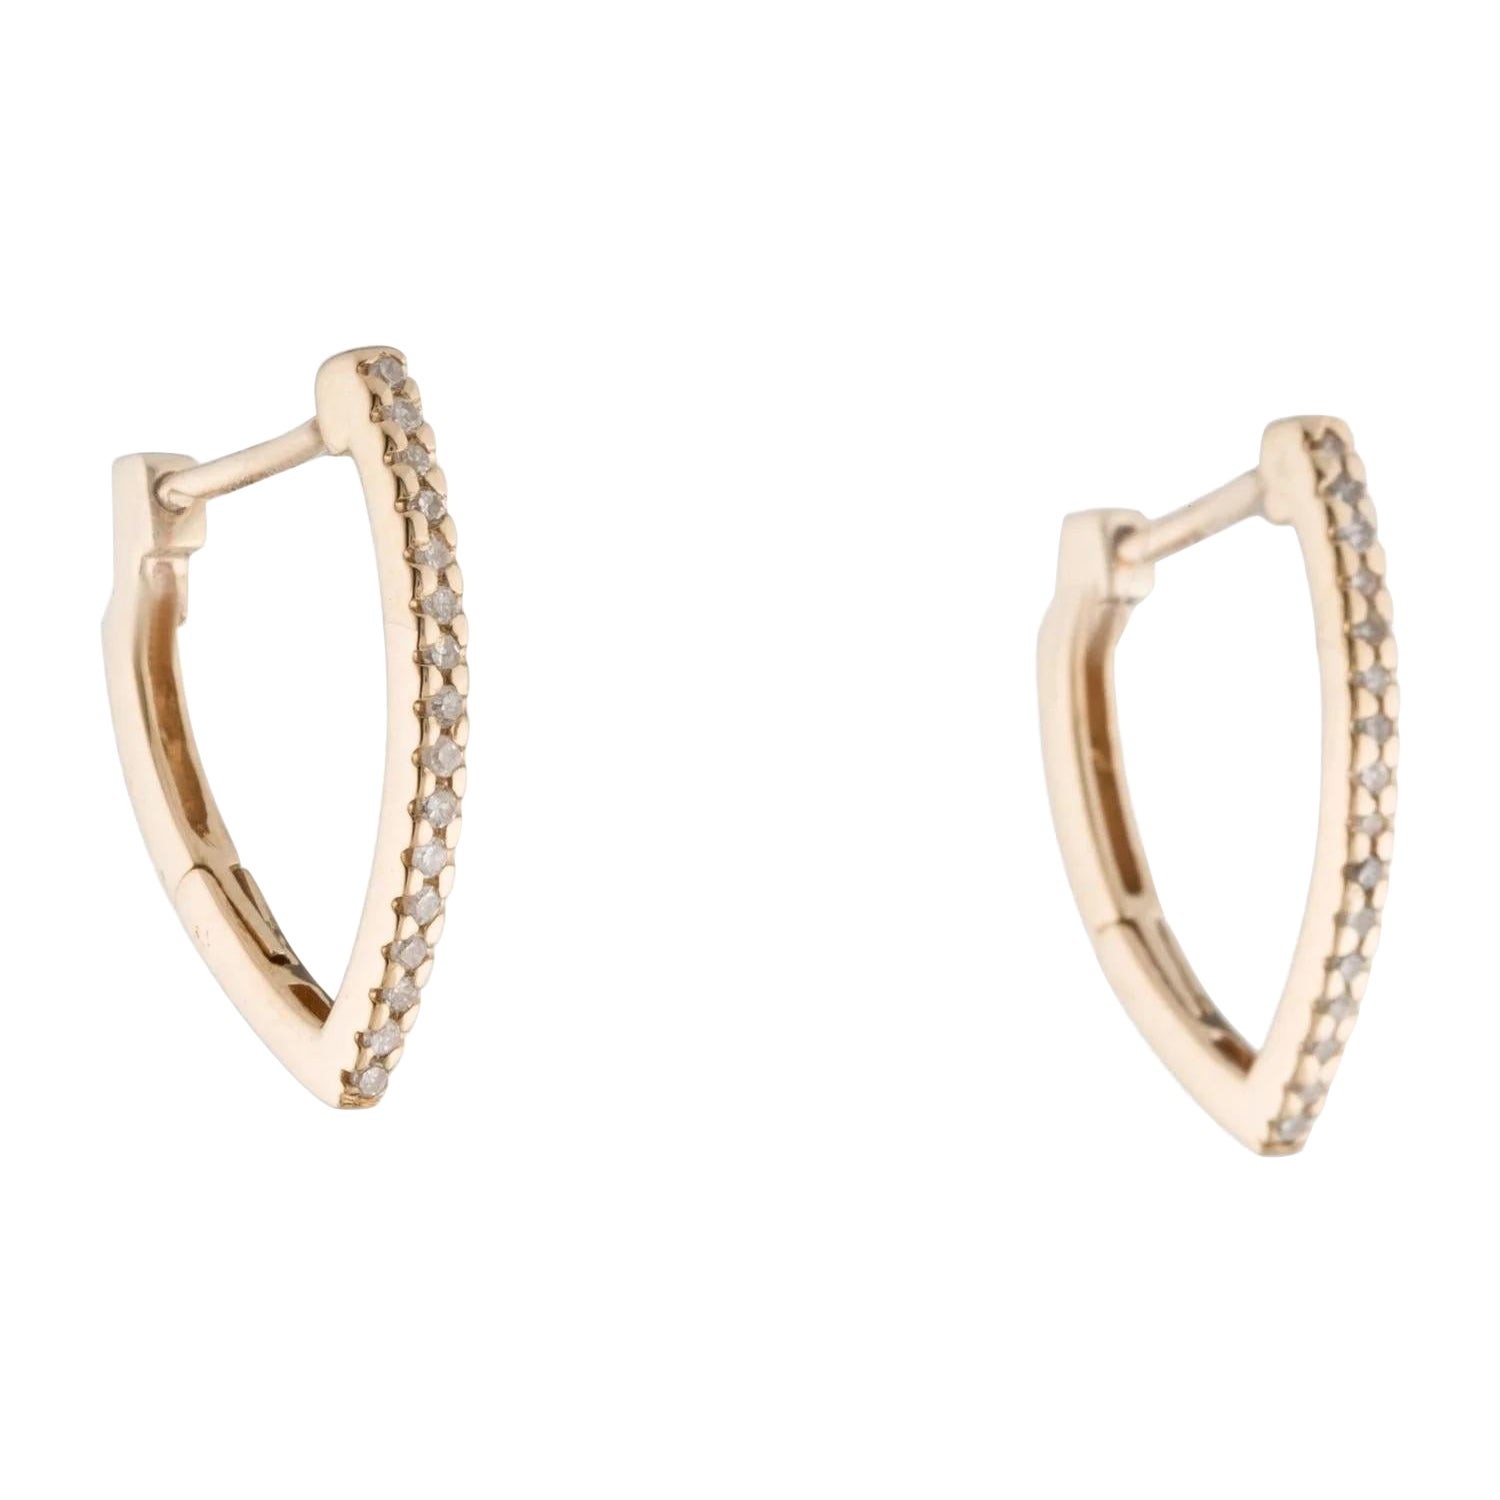 14K Diamond Hoop Earrings - 0.14 Carat Single Cut Diamonds For Sale